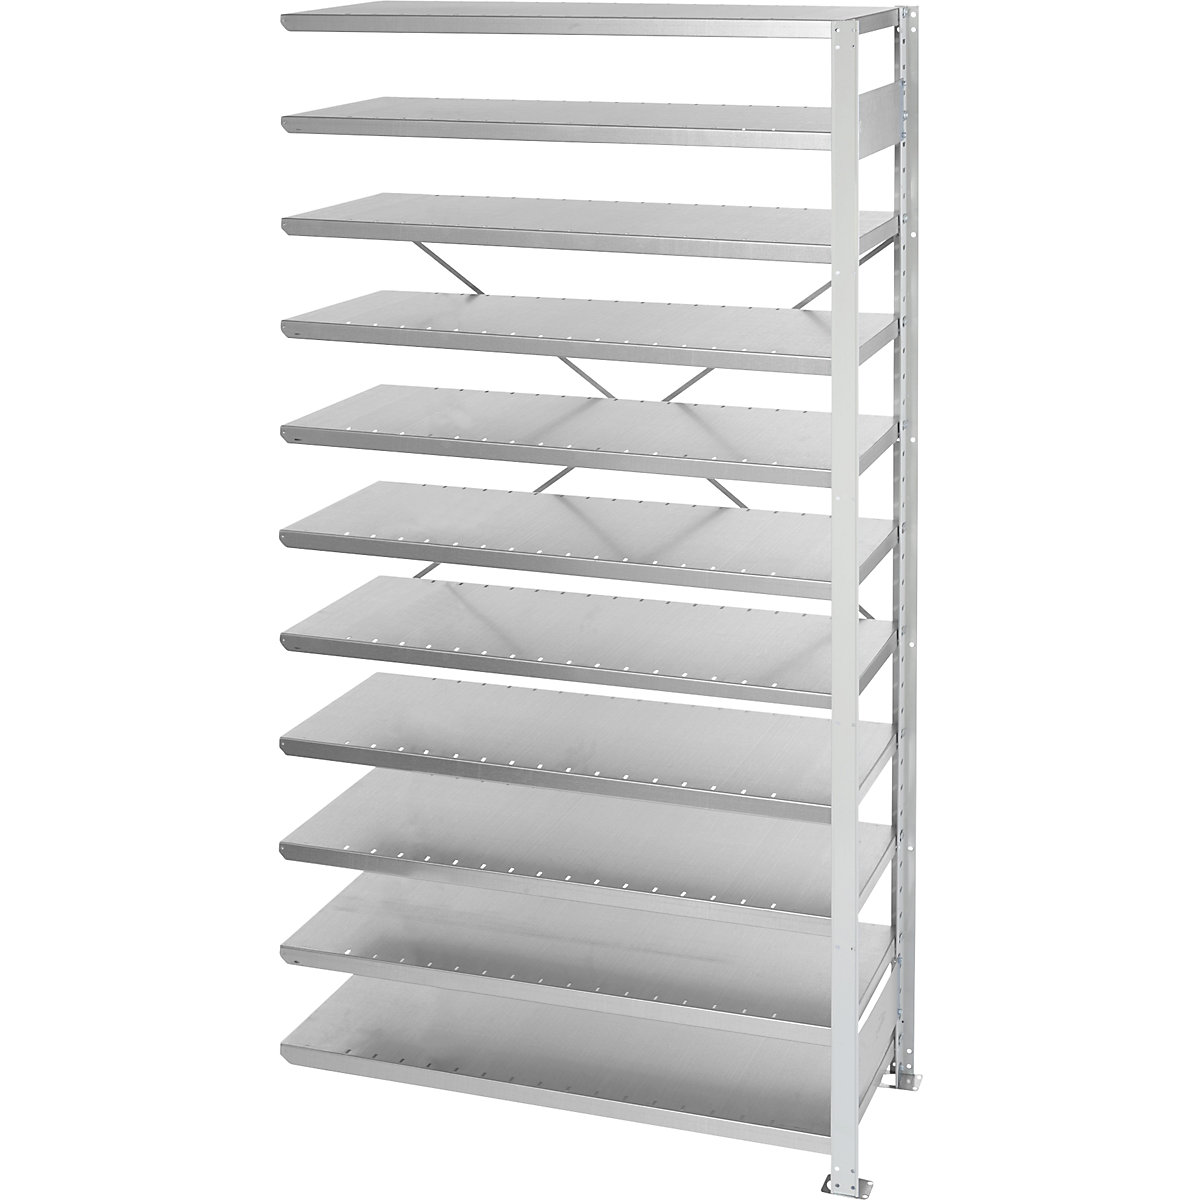 Boltless shelving unit for shelf bins – STEMO